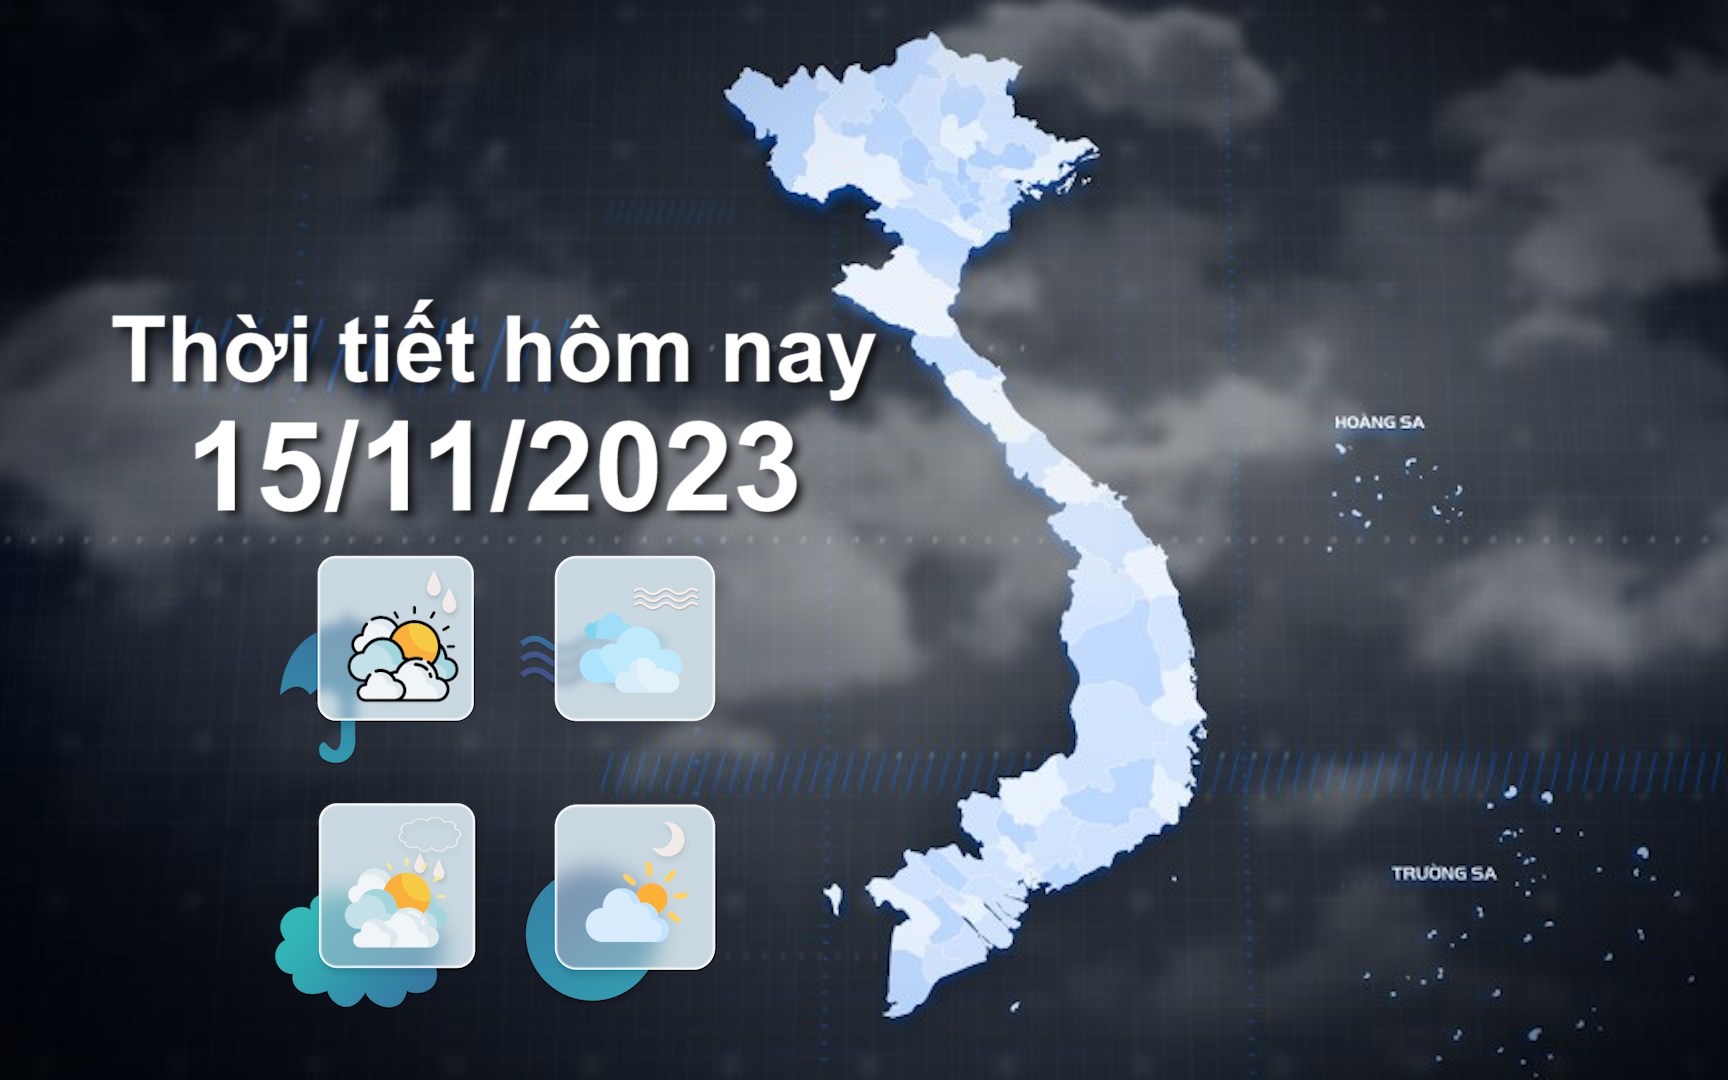 Thời tiết hôm nay 15/11/2023: Bắc Bộ sáng trời rét, trưa hửng nắng; Trung Trung Bộ mưa vừa, mưa to